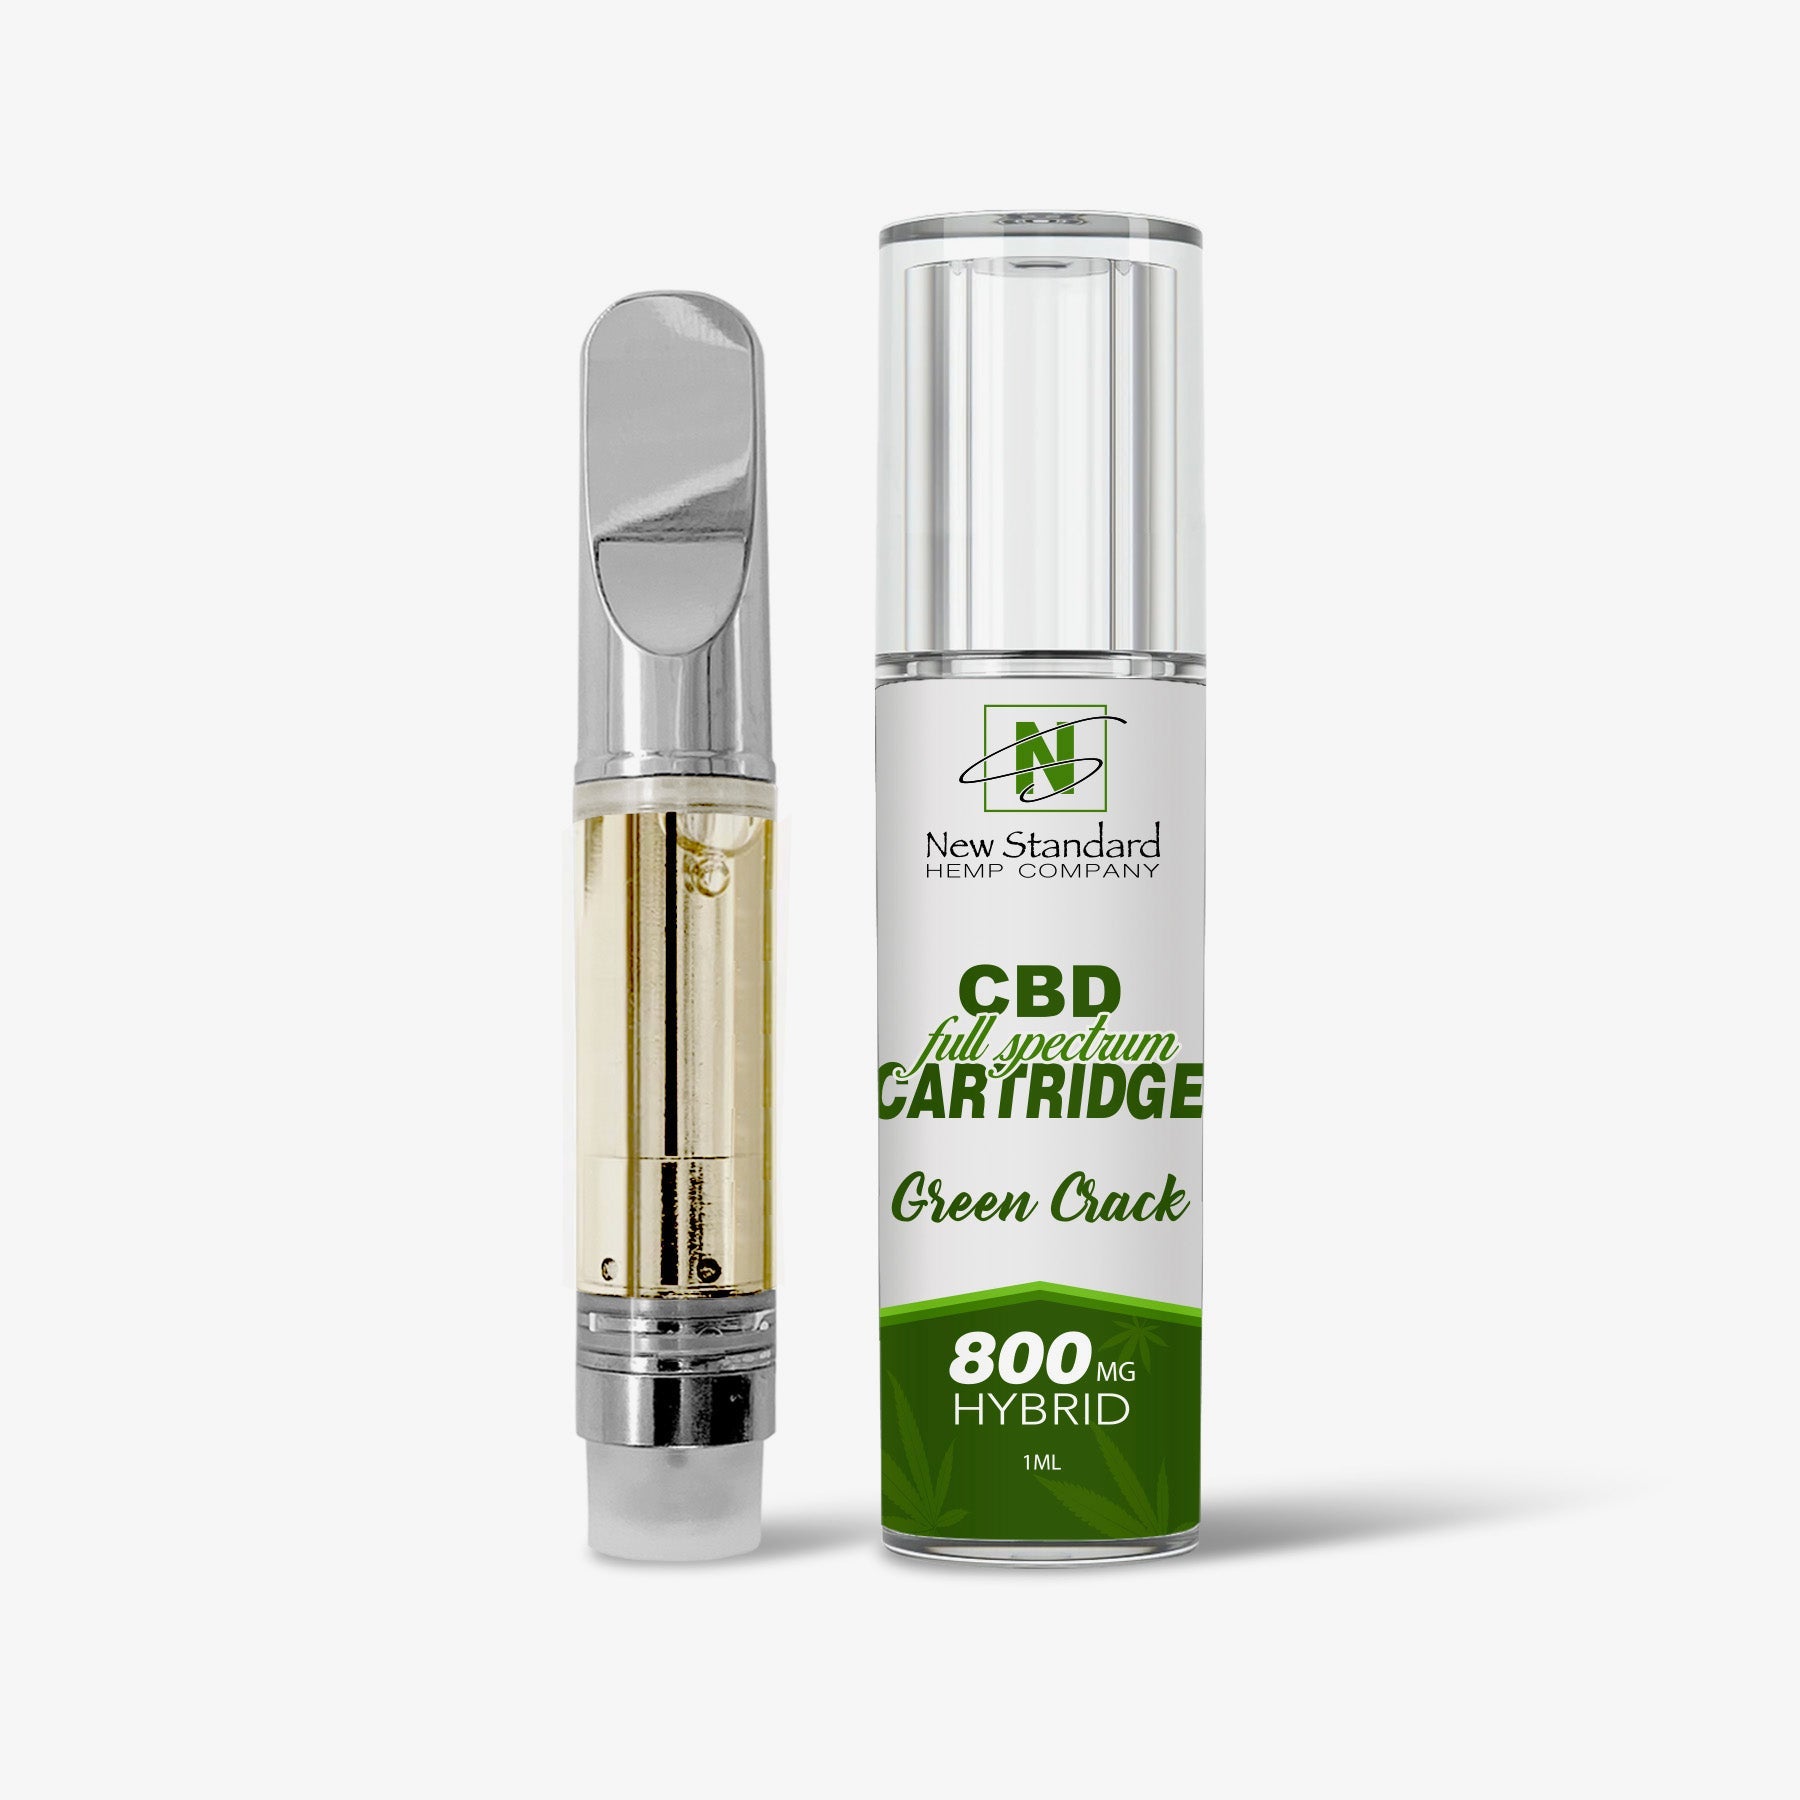 CBD Vape Cartridge / Green Crack / New Standard Hemp